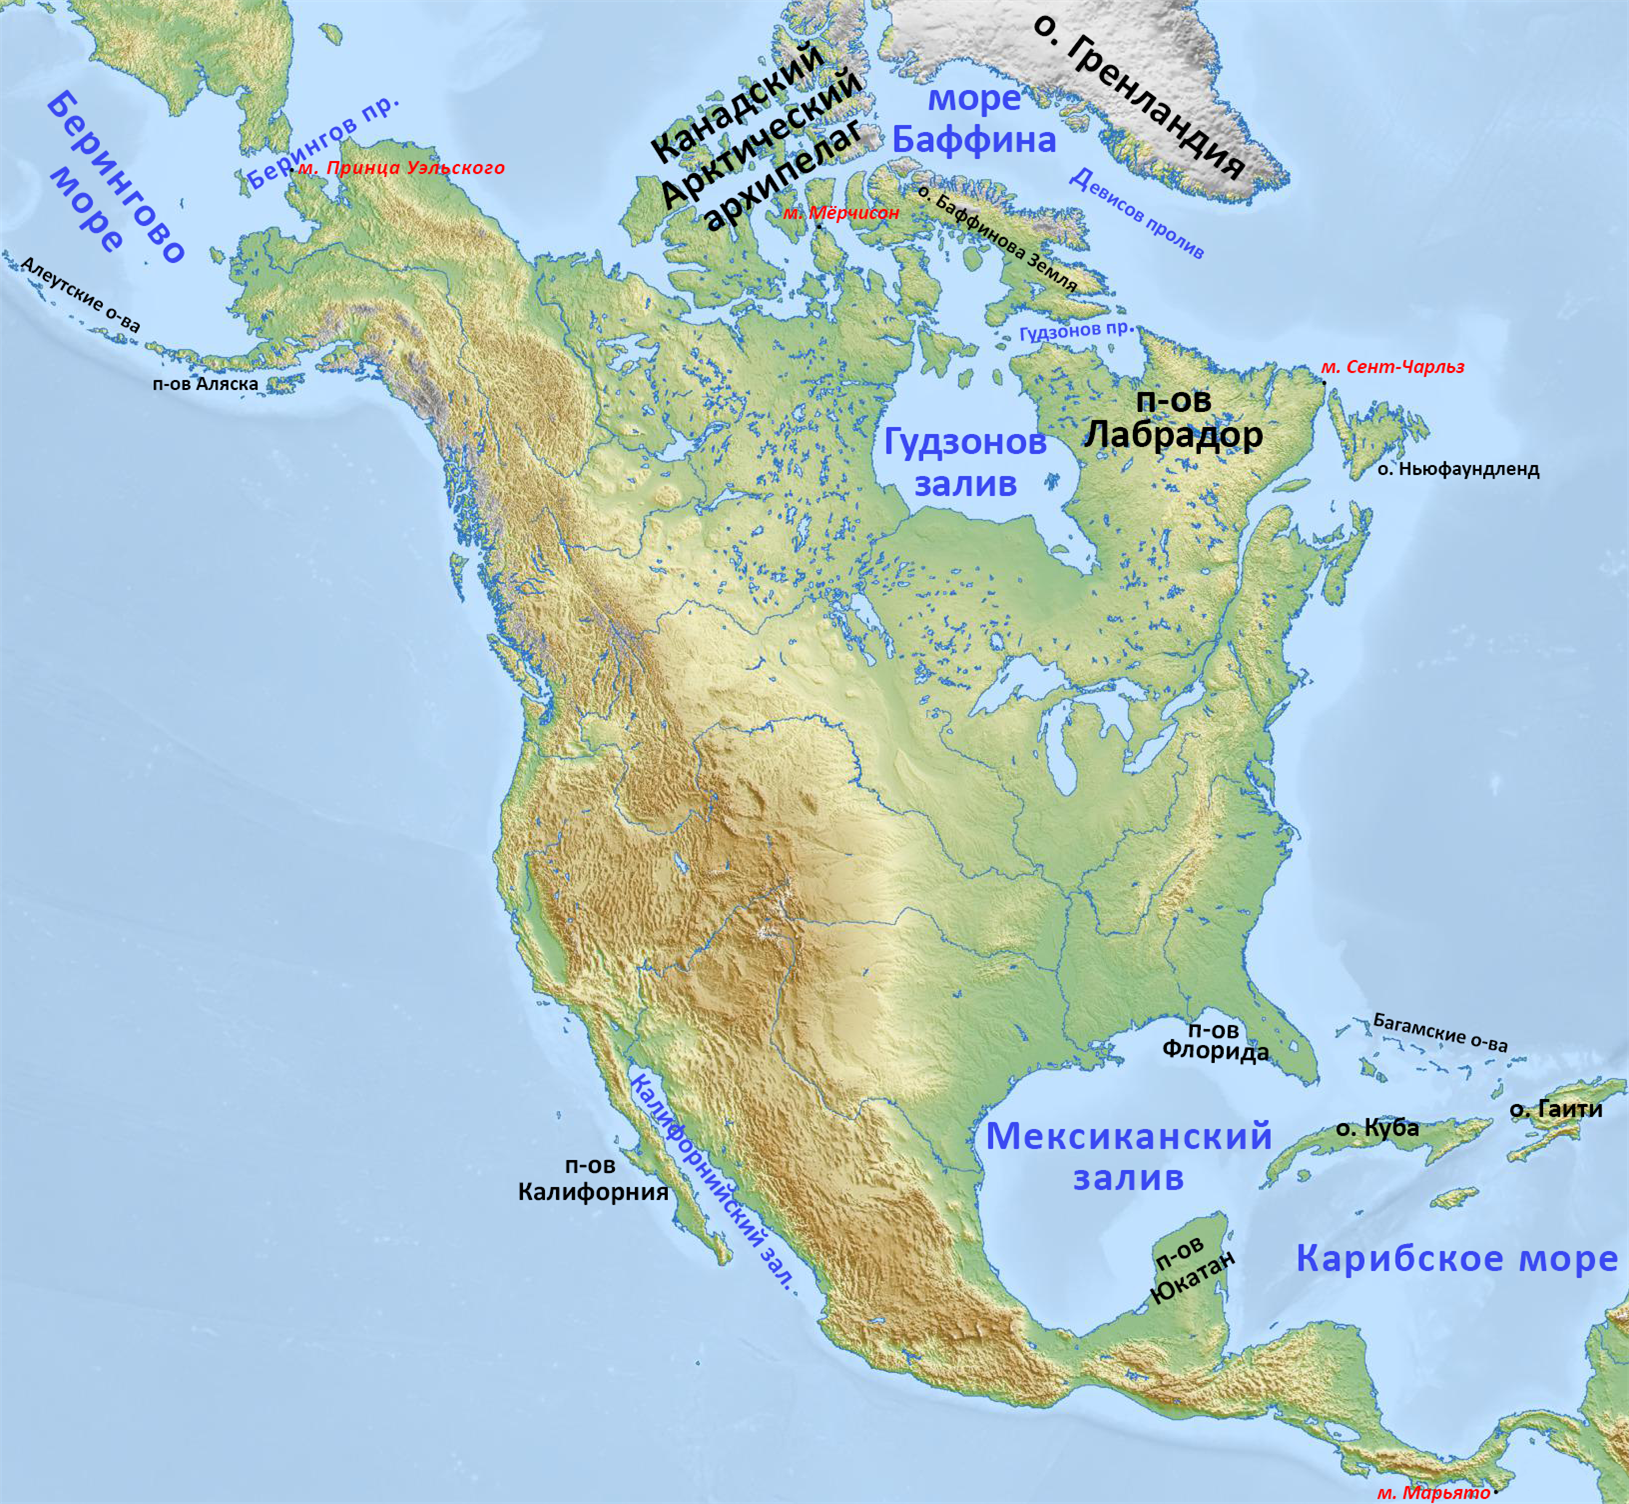 7 класс география объекты северной америки. Физ карта Северной Америки. ГП Северной Америки 7 класс карта. Полуострова Северной Америки на карте. Остров лабрадор на карте Северной Америки.